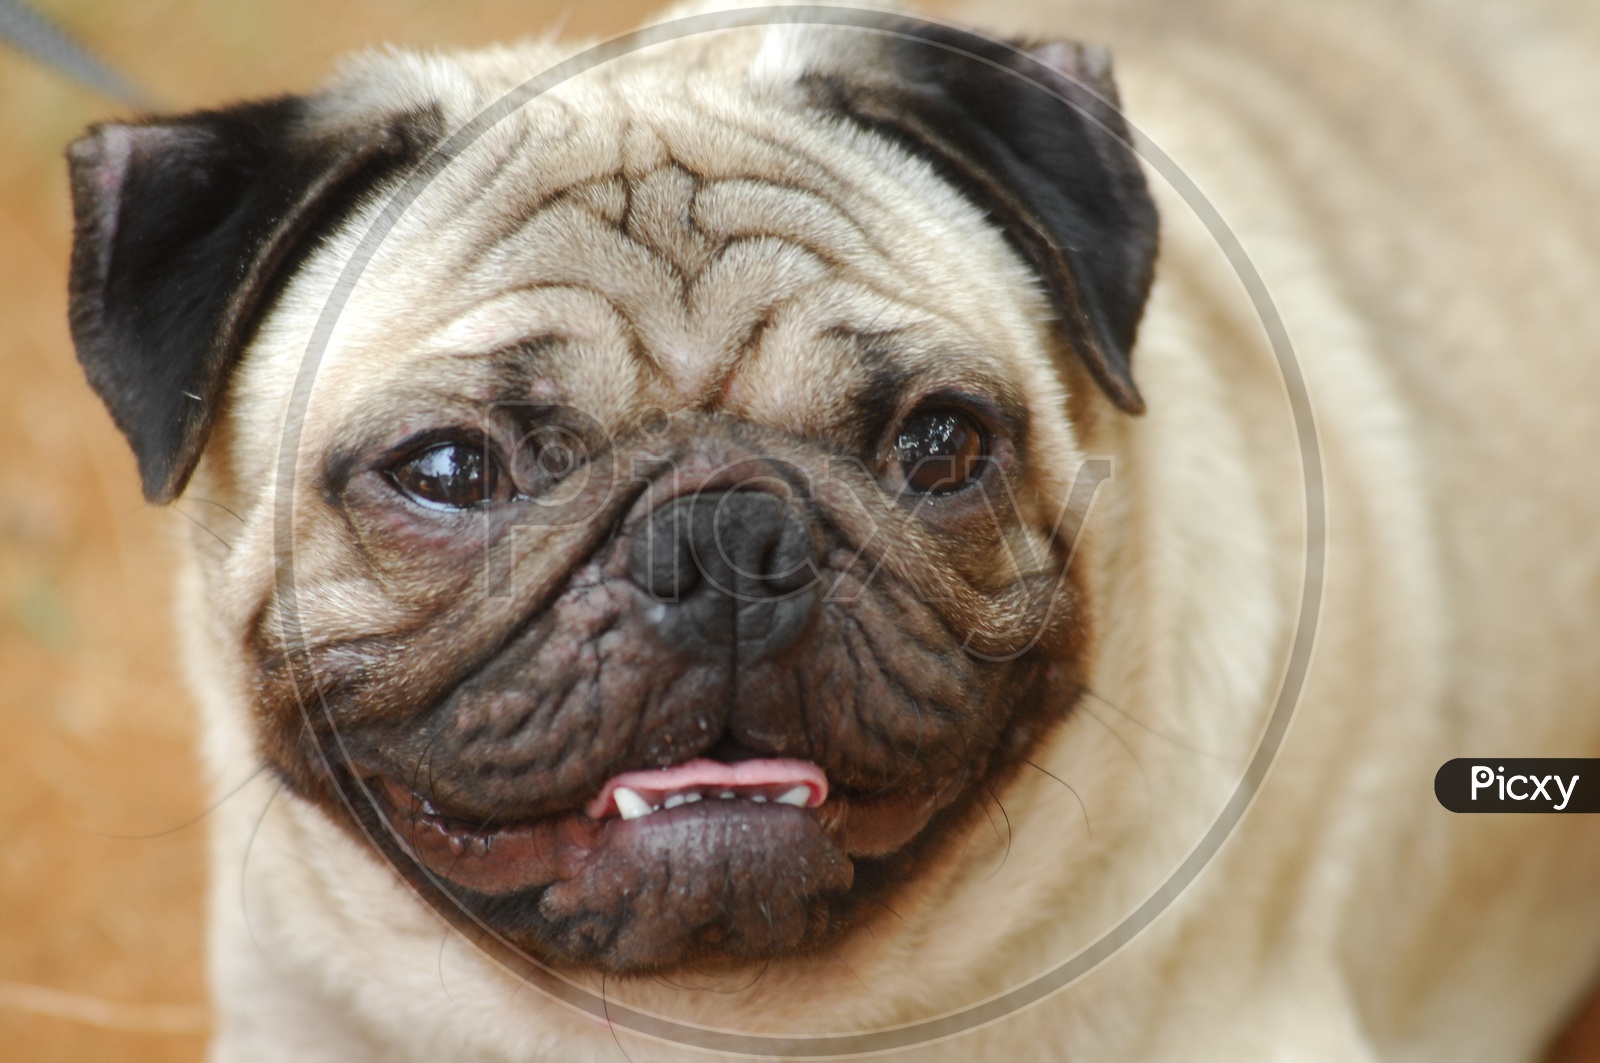 A closeup of Pug dog's face